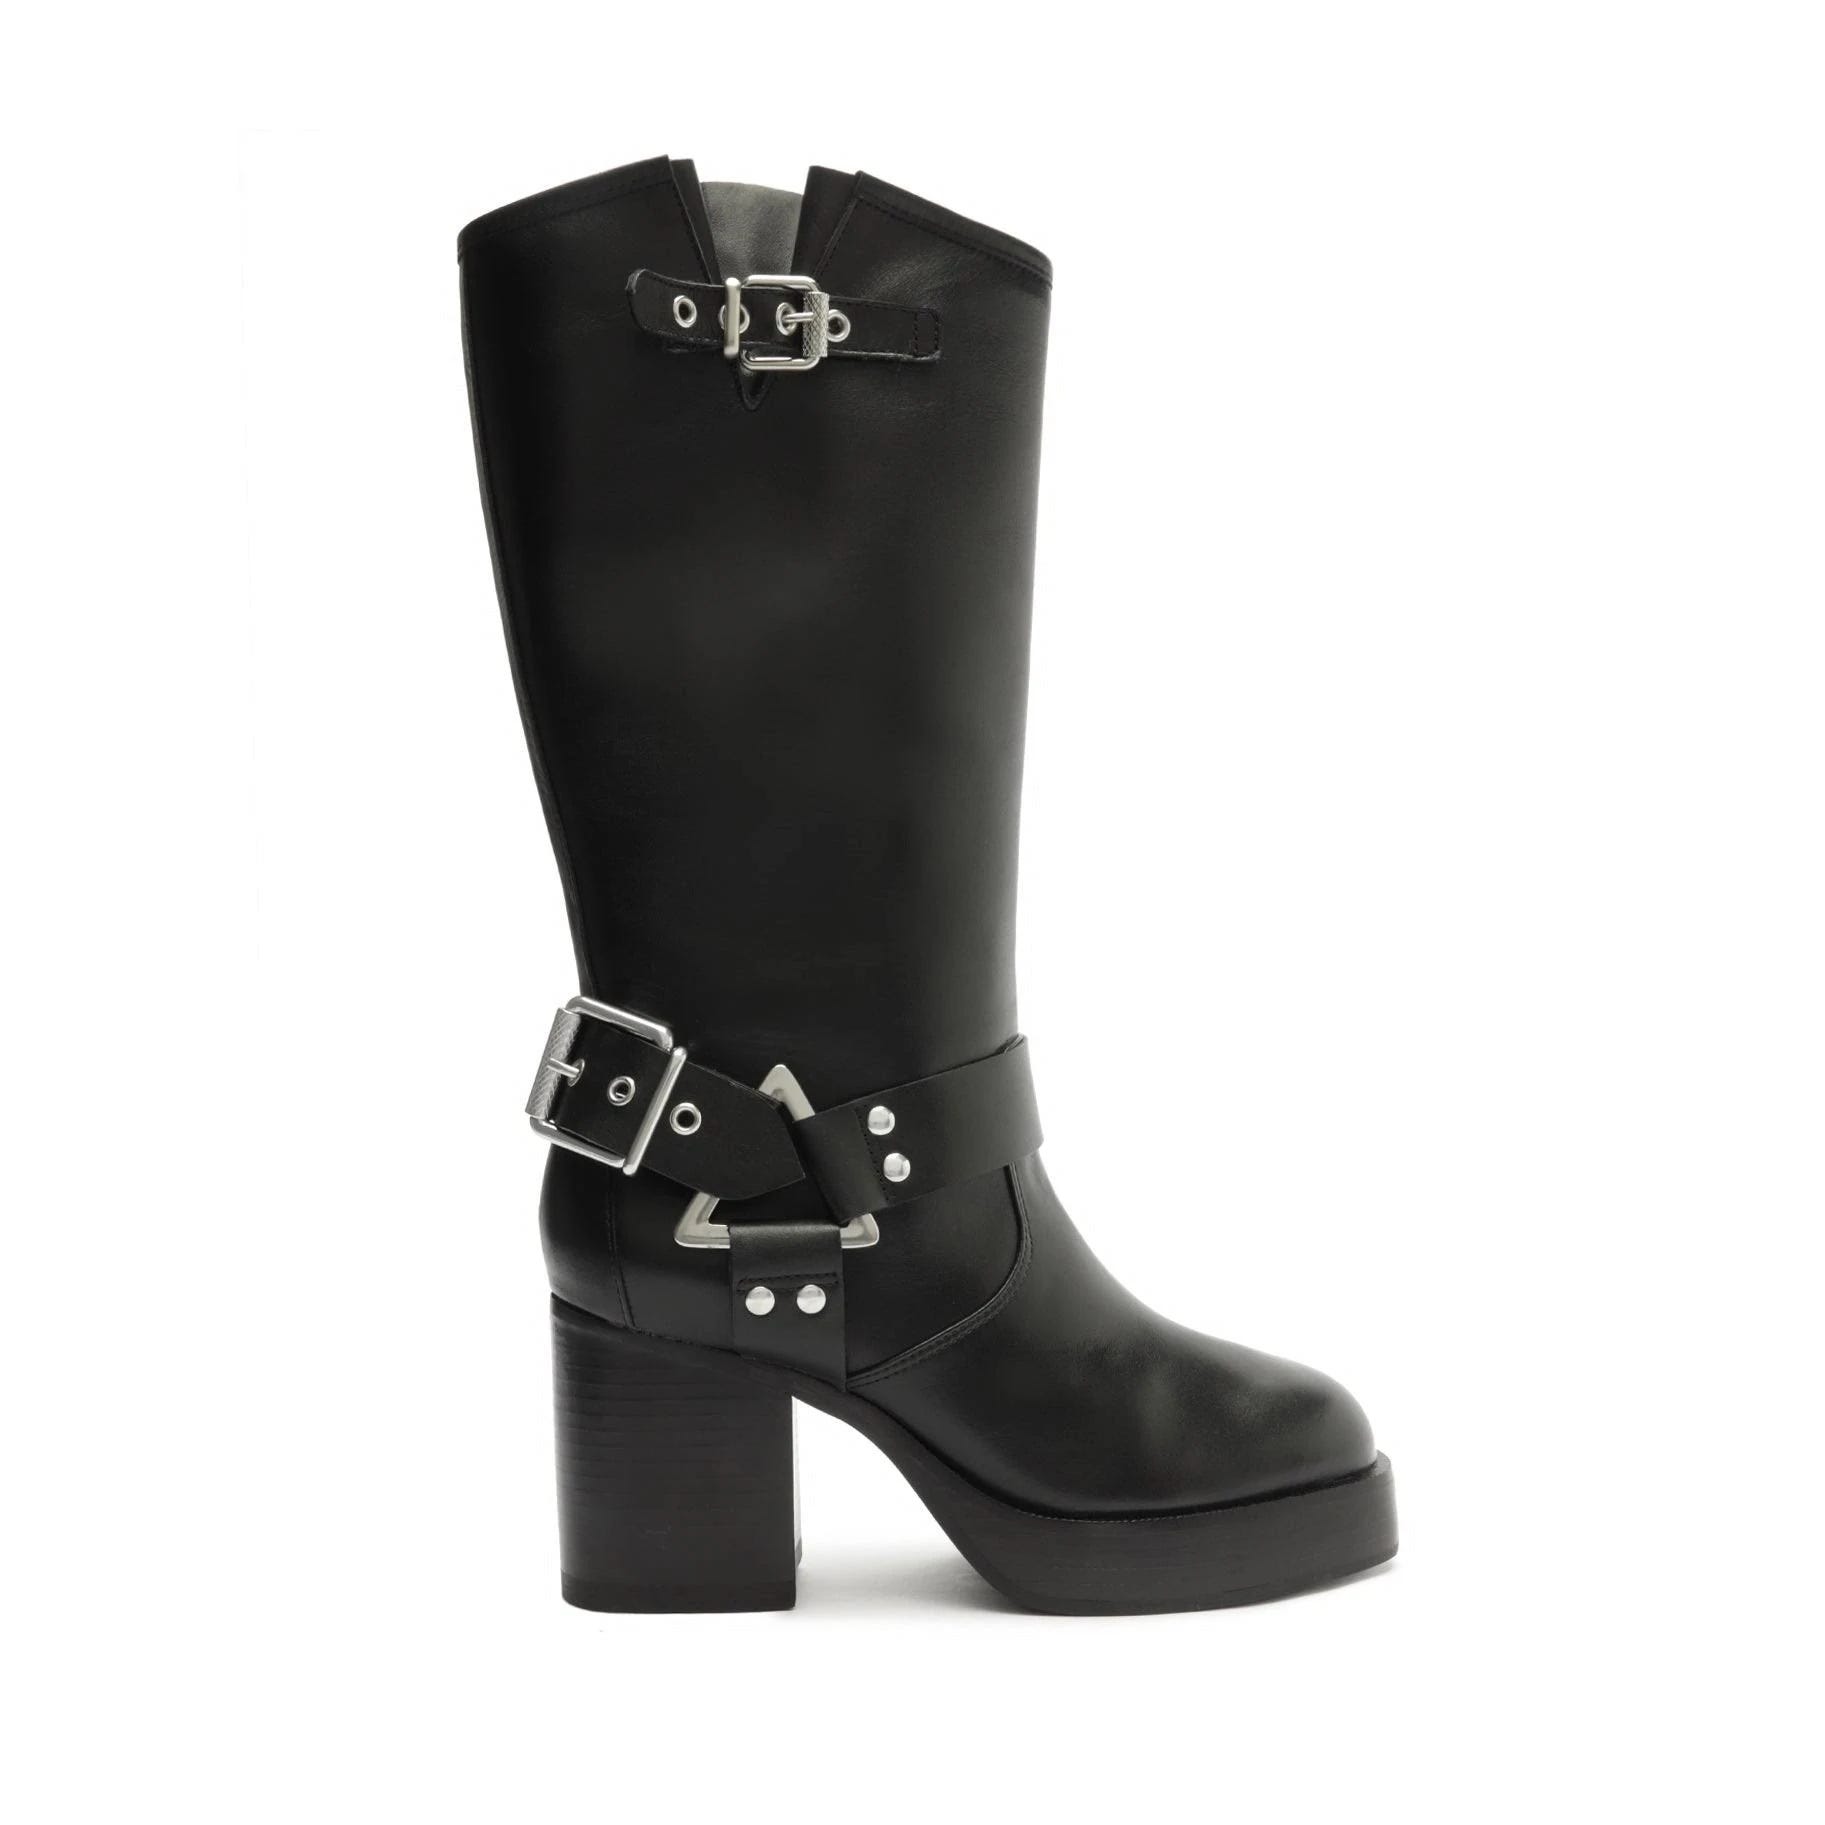 Schutz Women's Block Heel Boots - Elegant and Comfortable Design | Image